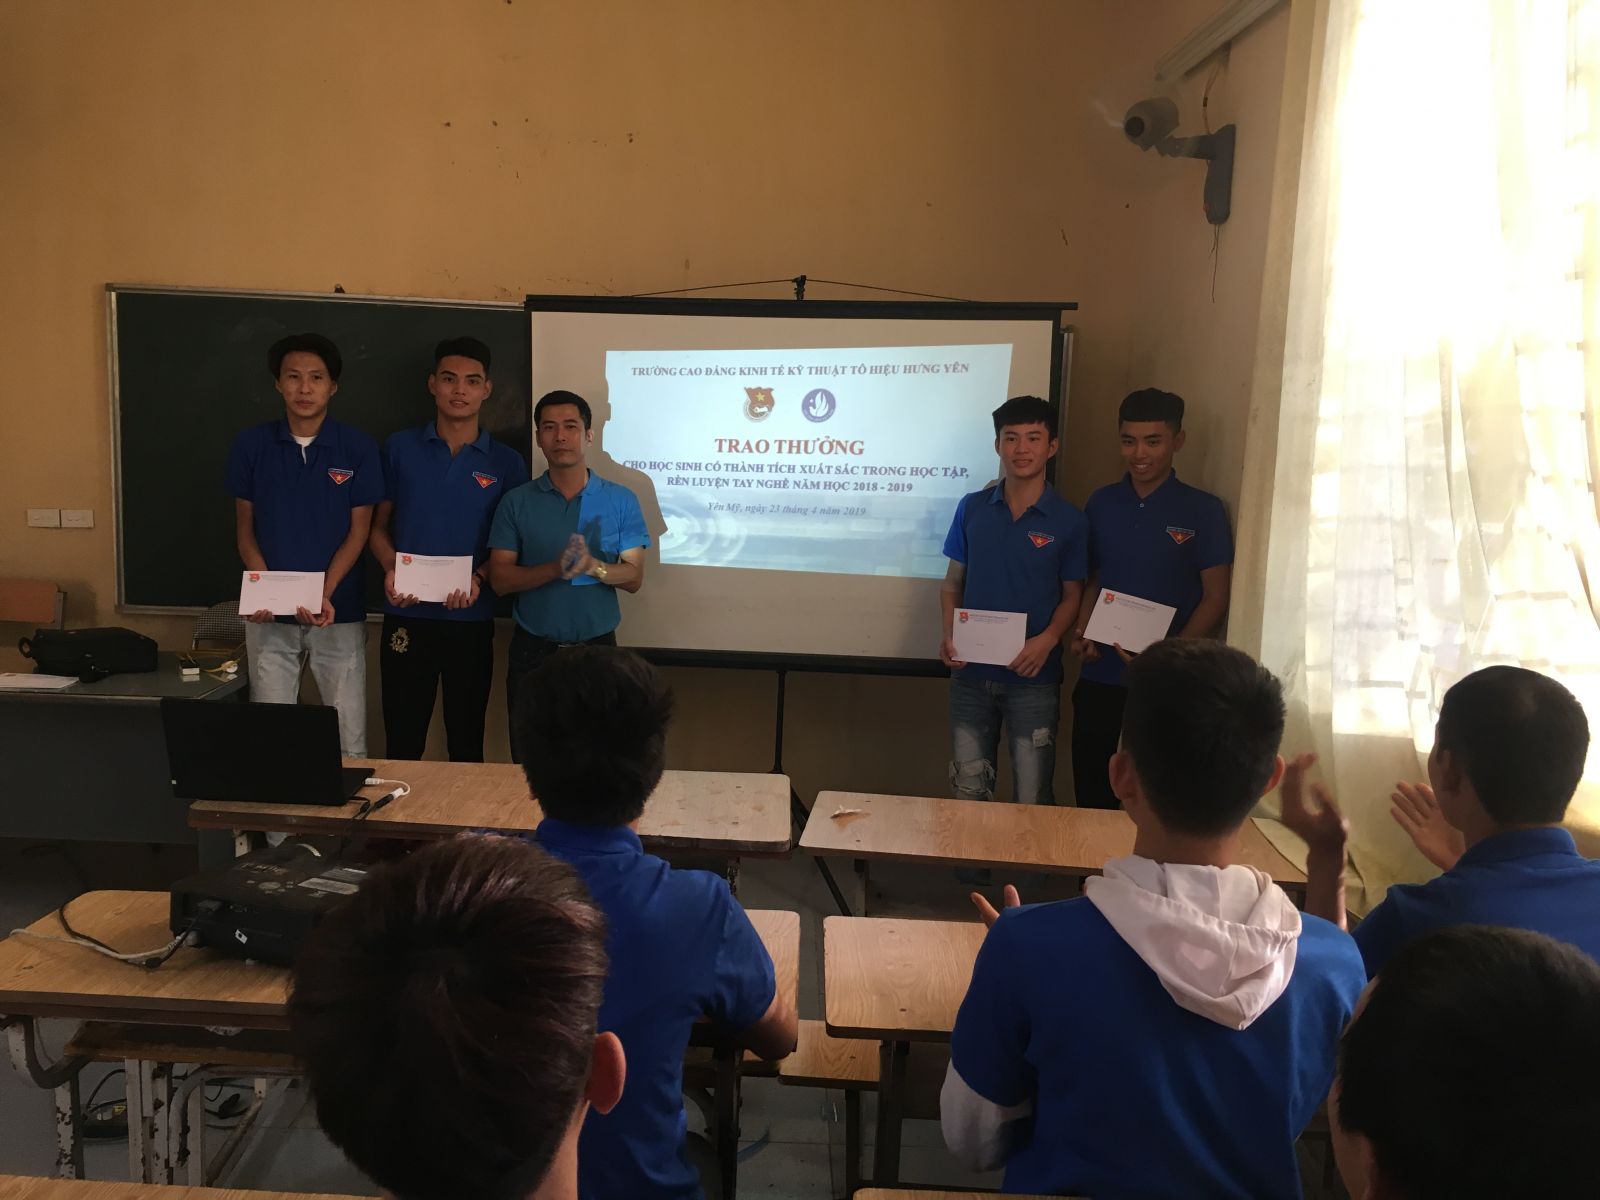 Đoàn trường Cao đẳng Kinh tế kỹ thuật Tô hiệu Hưng Yên tổ chức chương trình “Trao thưởng cho học sinh có thành tích xuất sắc trong học tập, rèn luyện tay nghề năm học 2018 – 2019”